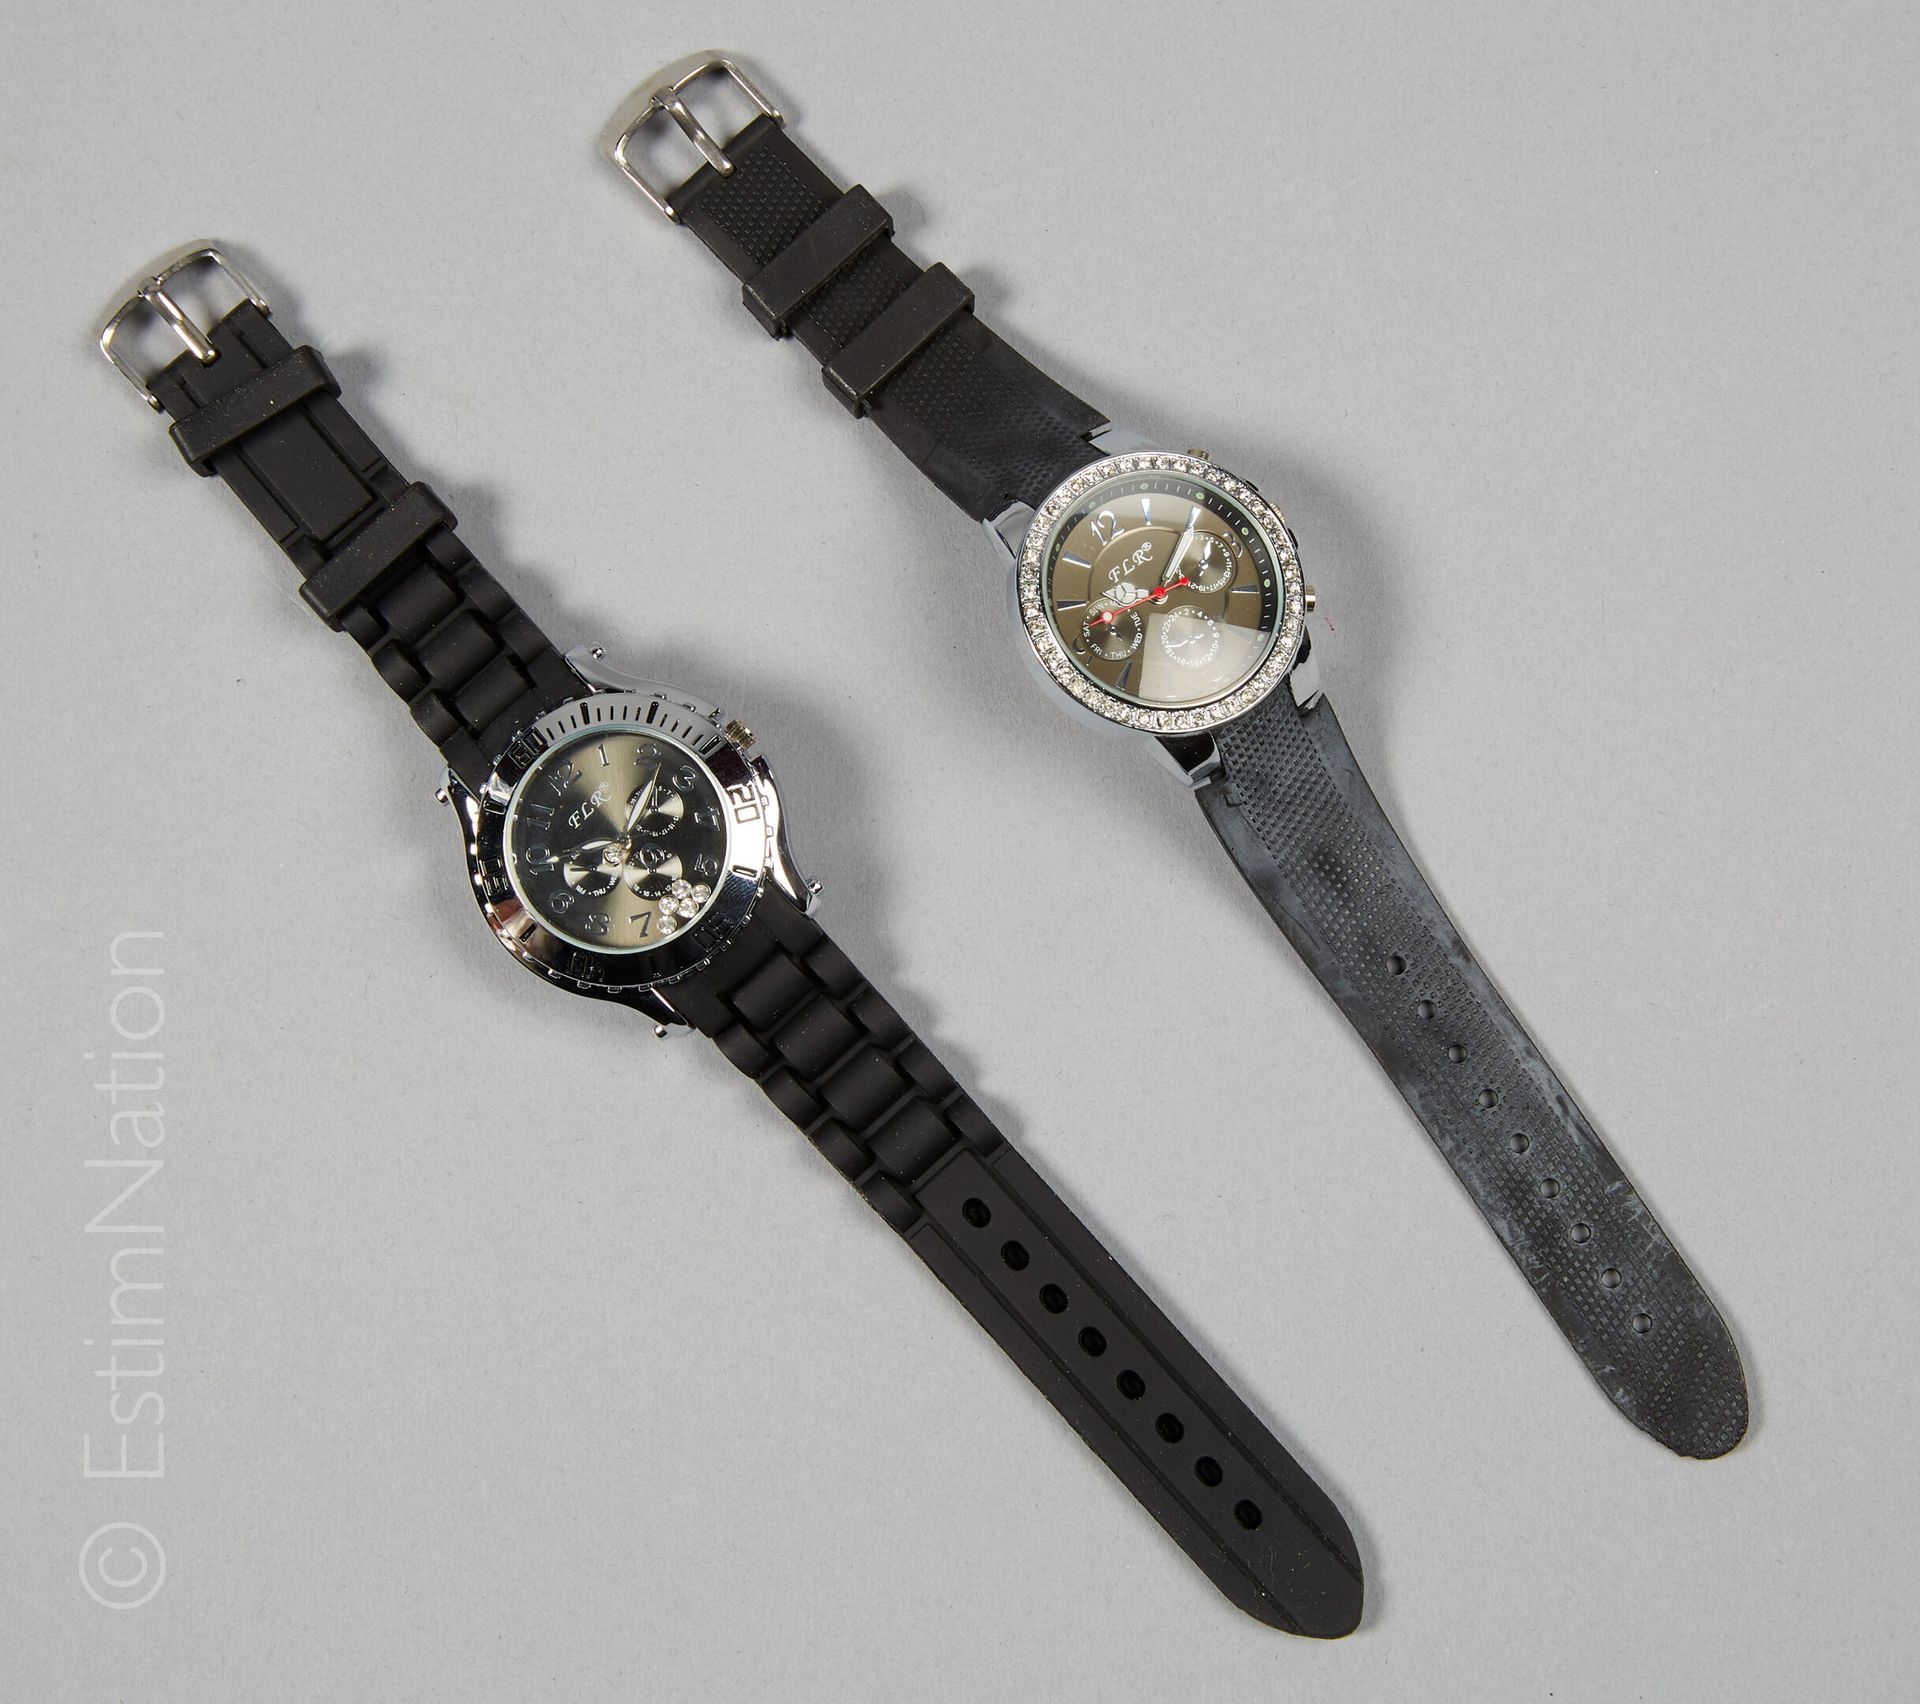 LOT DE MONTRES Lot of two wrist watches brand FLR quartz movement (new batteries&hellip;